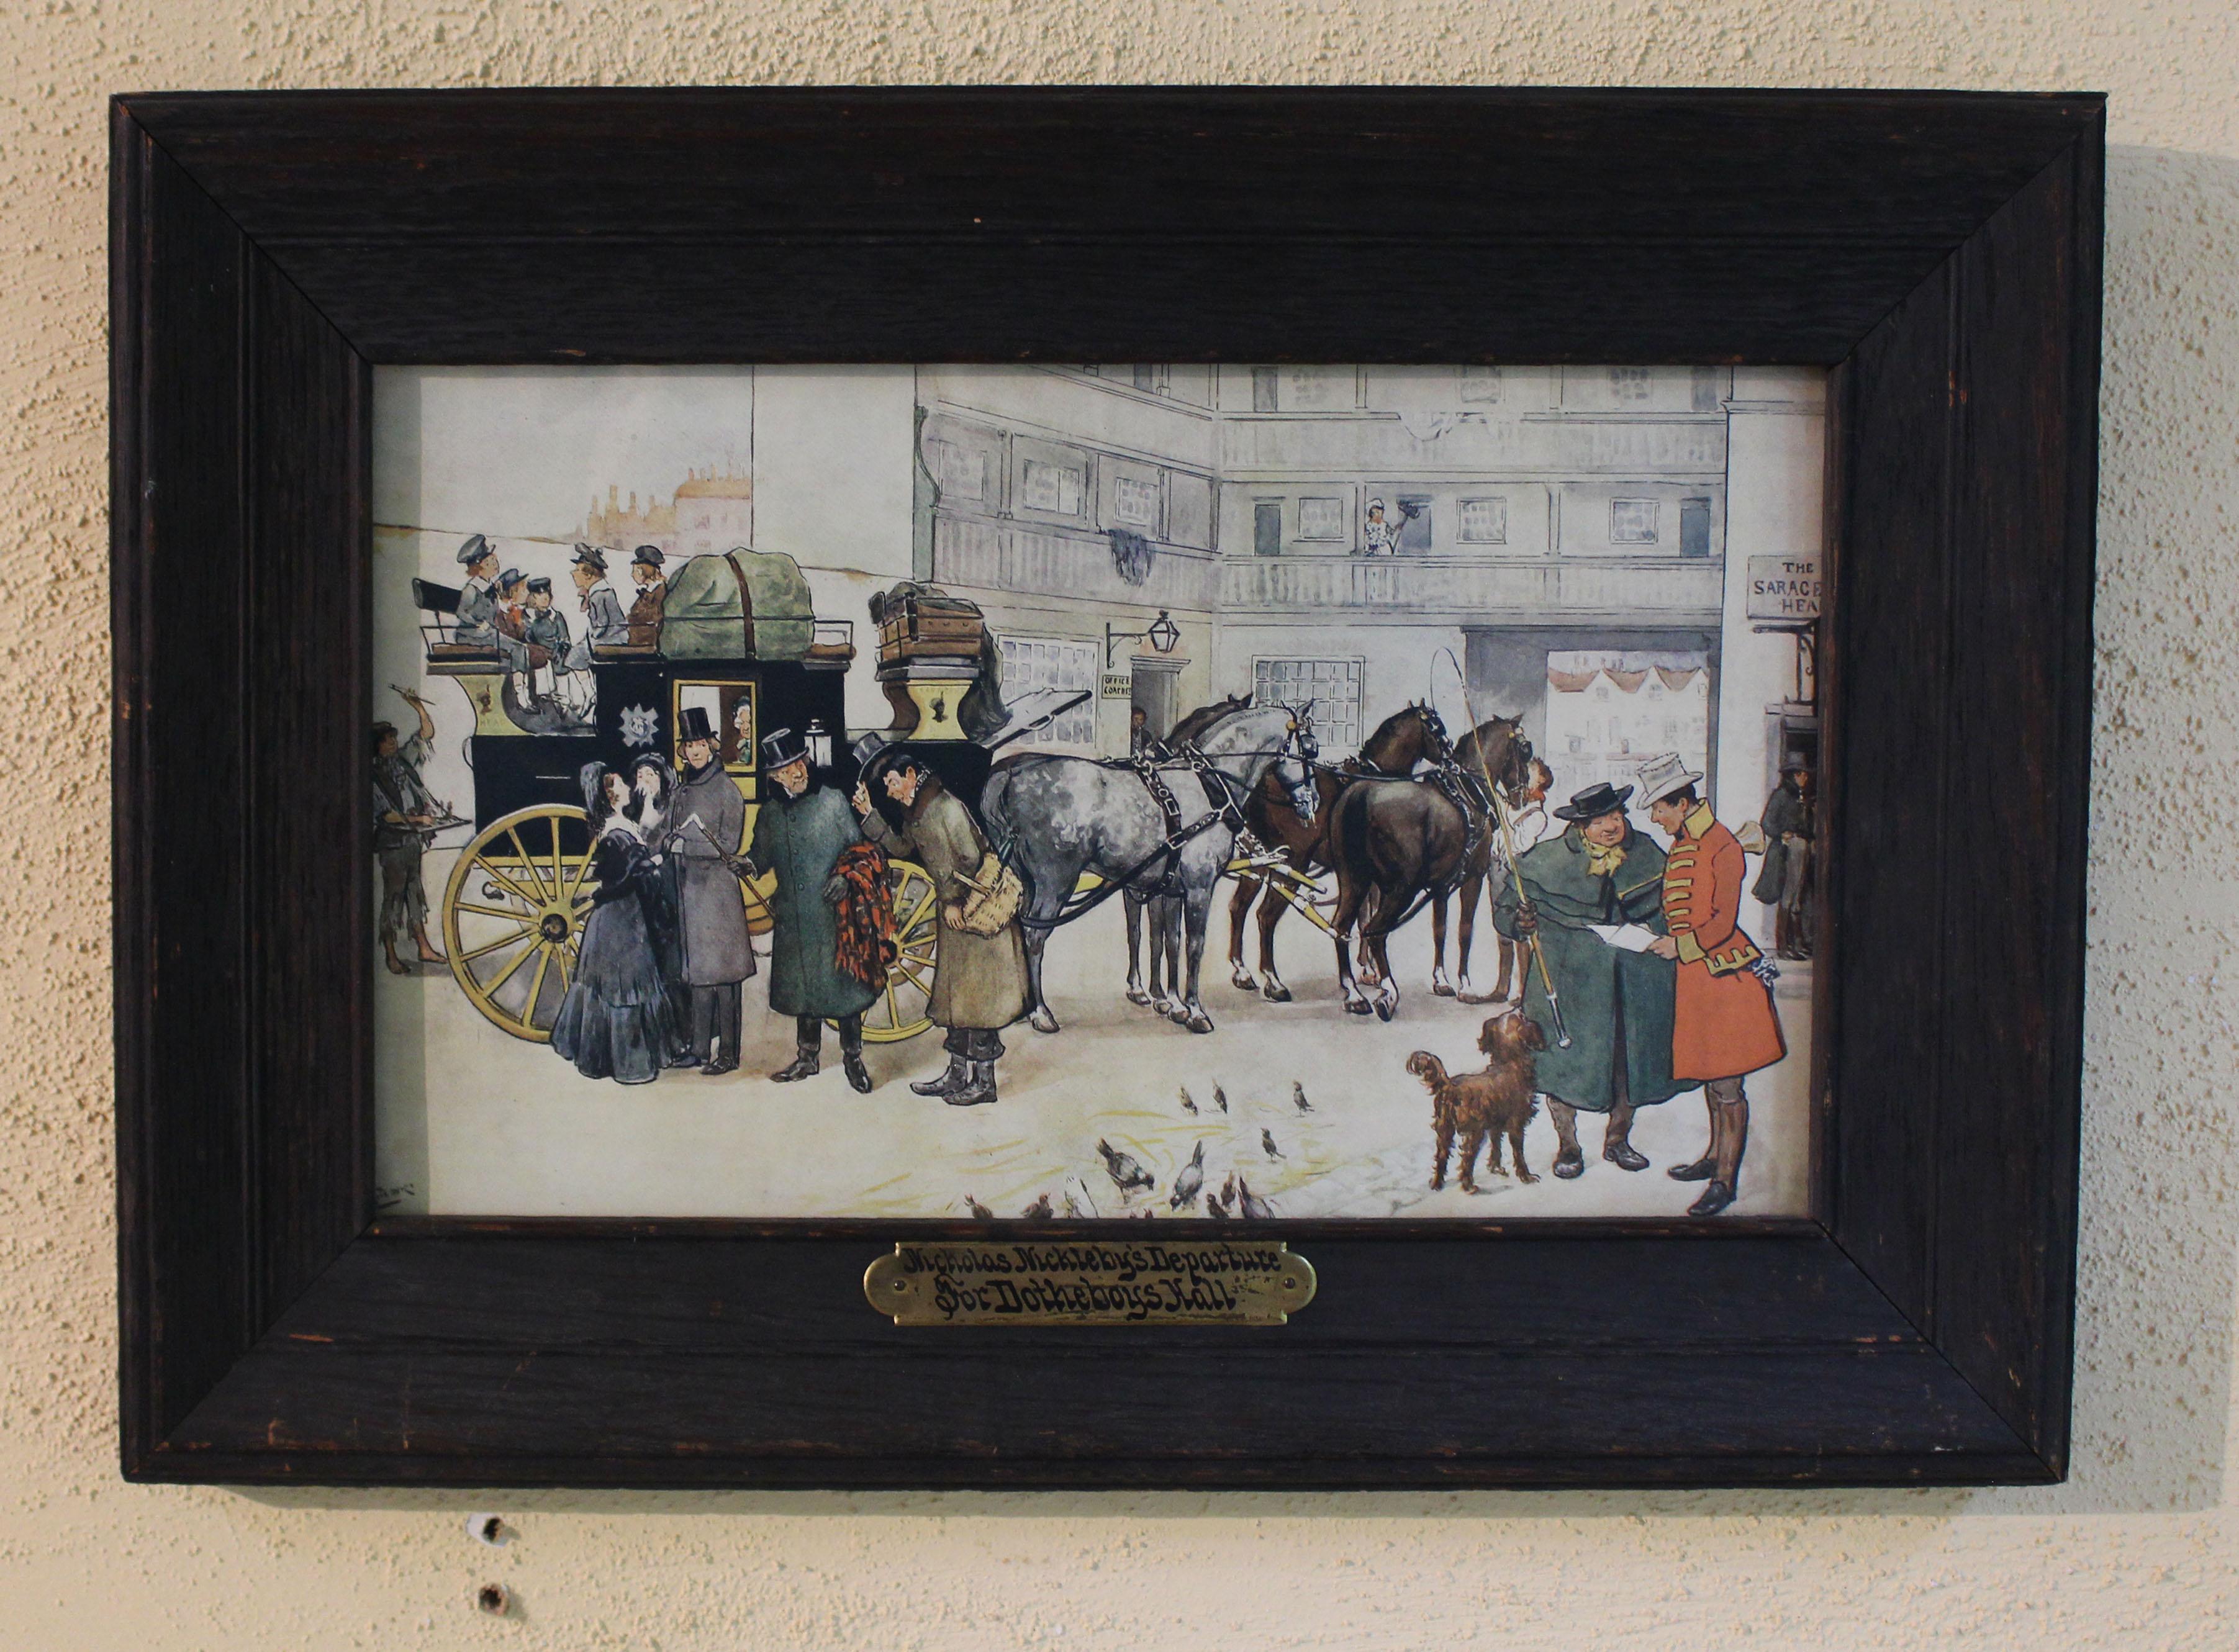 Nicholas Nicklebys Abreise nach Dotheboys Hall, Druck aus der 1902 erschienenen Serie von Raphael Tuck & Sons, London. Künstler: Albert Ludovici JR (1820-1894). Er wurde von Raphael Tuck & Sons beauftragt, eine Serie von 16 Gemälden zu malen, die